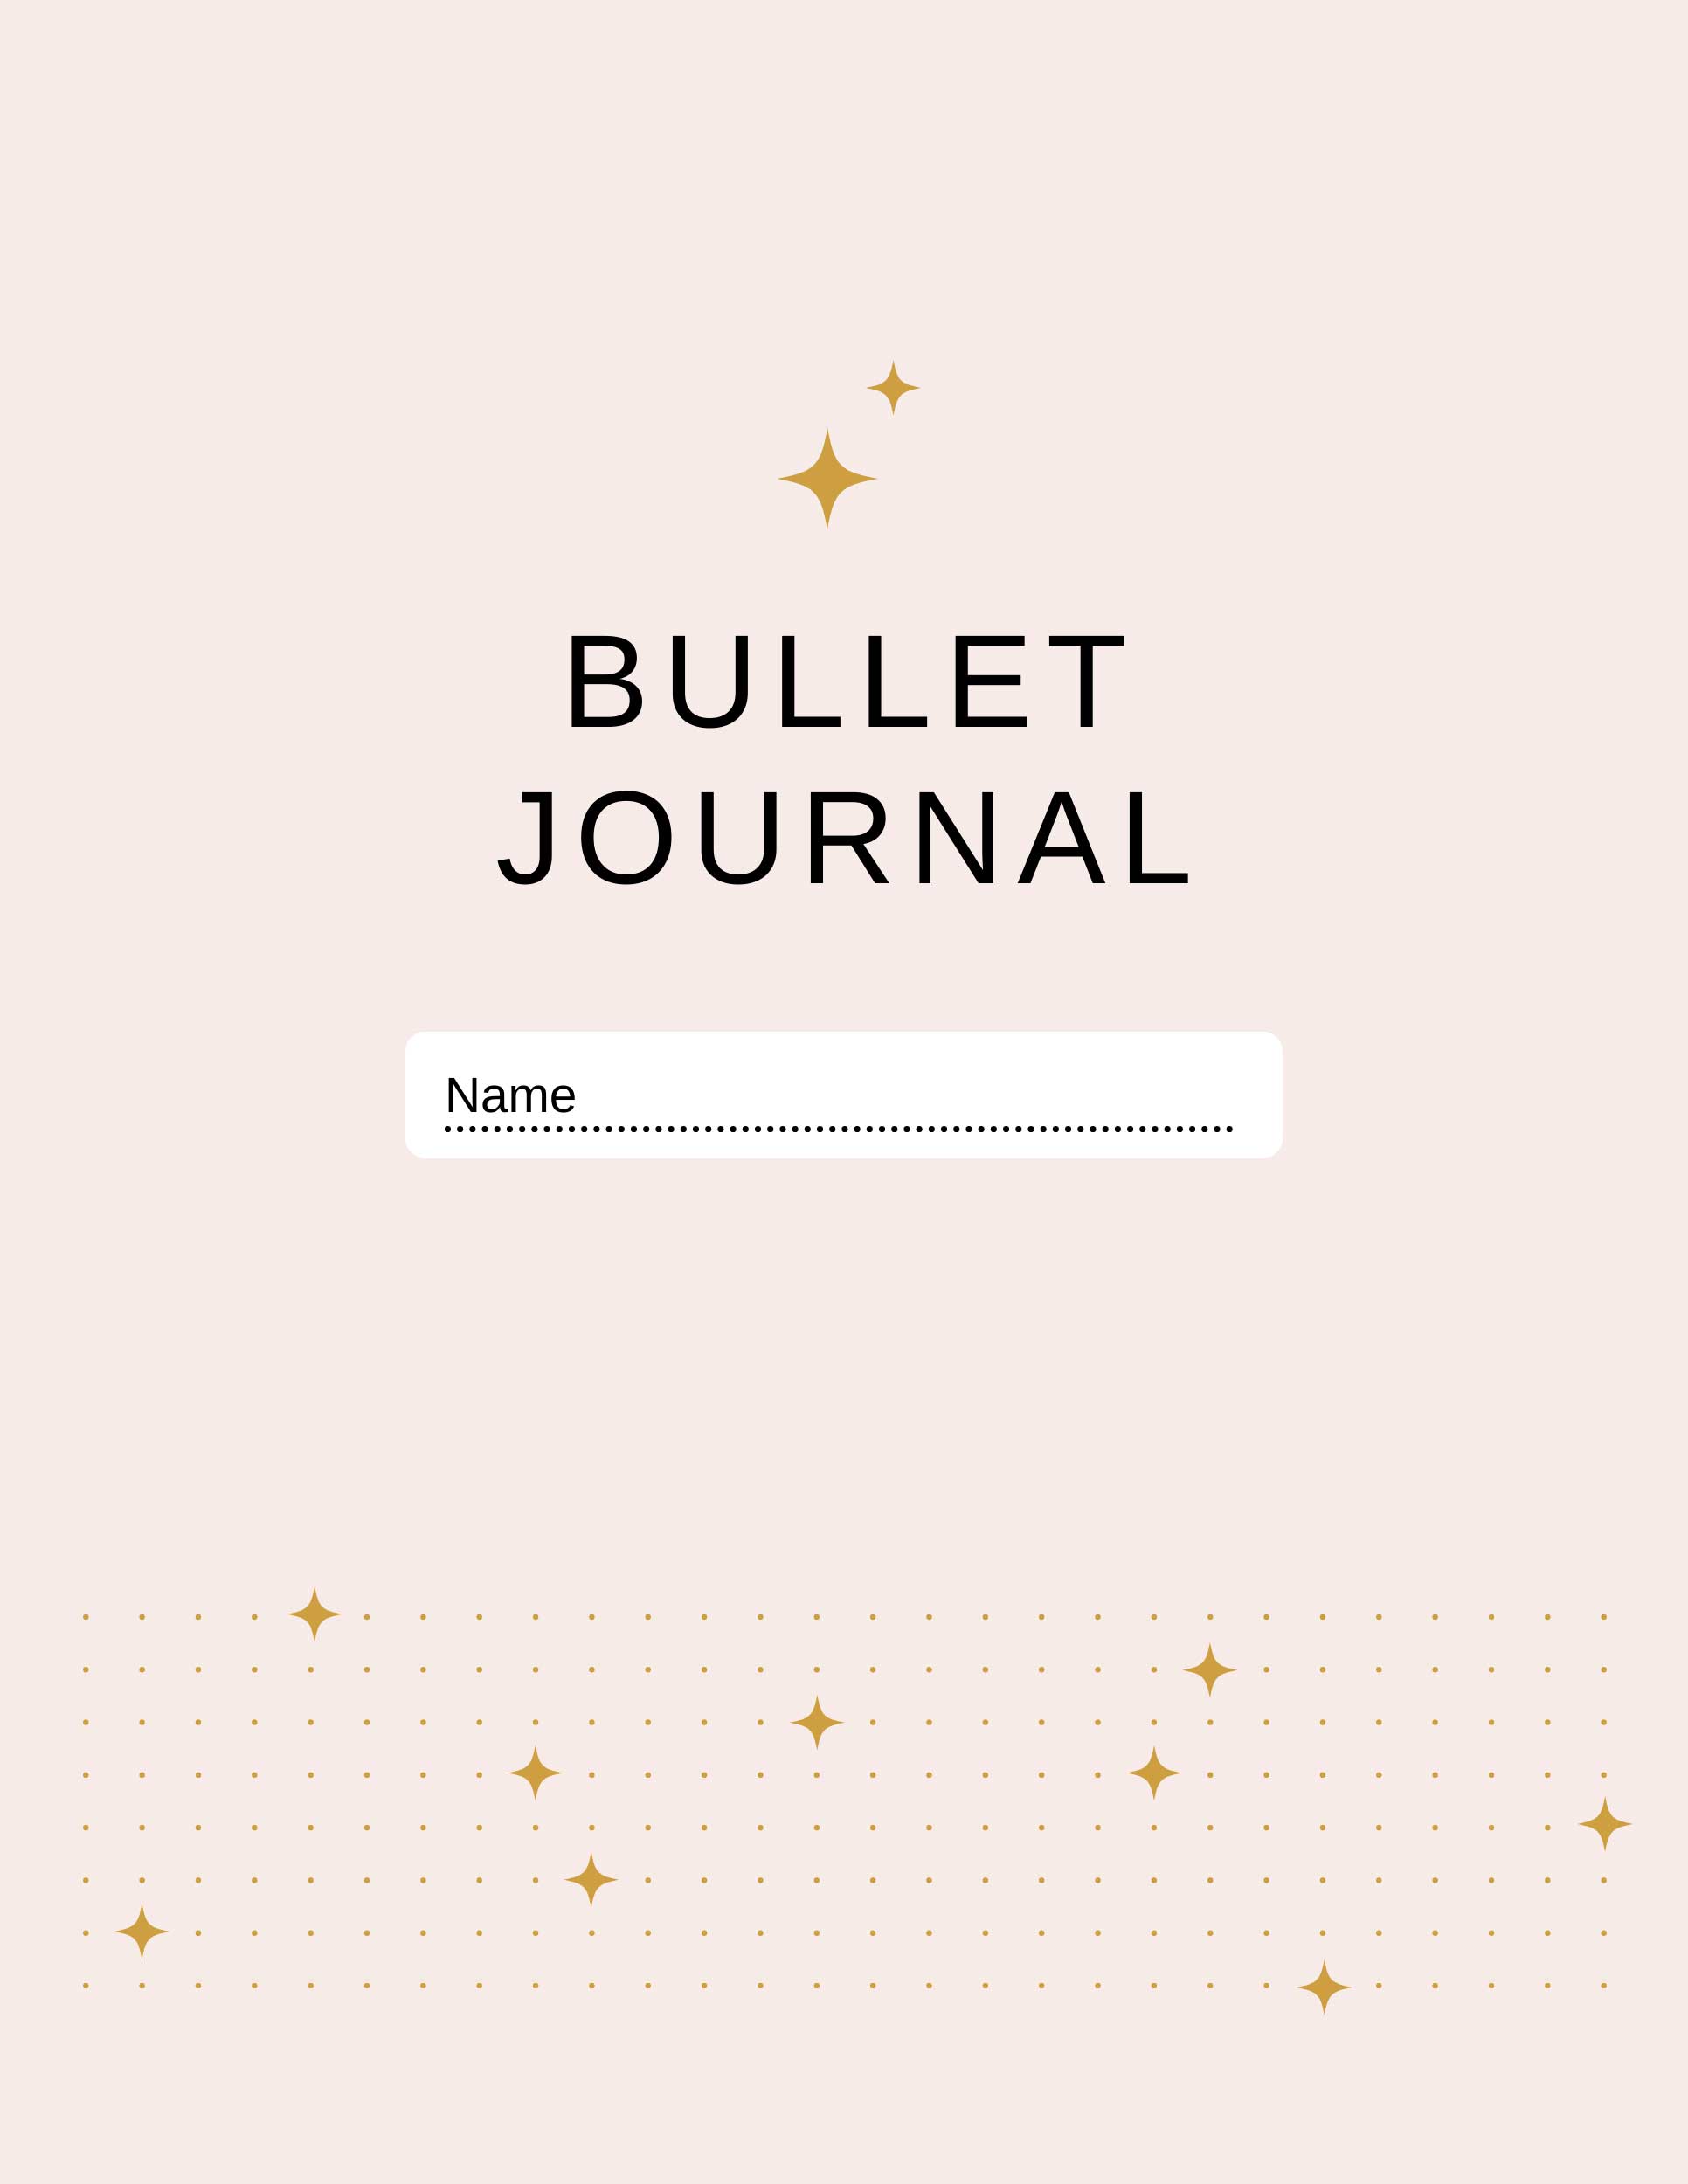 Gehörst du (so wie ich) zu den Menschen, die es lieben, ihr Leben zu organisieren und erledigte Aufgaben abzuhaken? Dann hast du bestimmt auch Spaß daran, ein Bullet Journal zu gestalten. Wenn du gut ins neue Jahr starten möchtest, ist jetzt der perfekte Zeitpunkt, um dir ein eigenes Bullet Journal zuzulegen. Lies mehr zu meinen Wohlfühl-Kick-Start-Tipps am Blog whoismocca.com